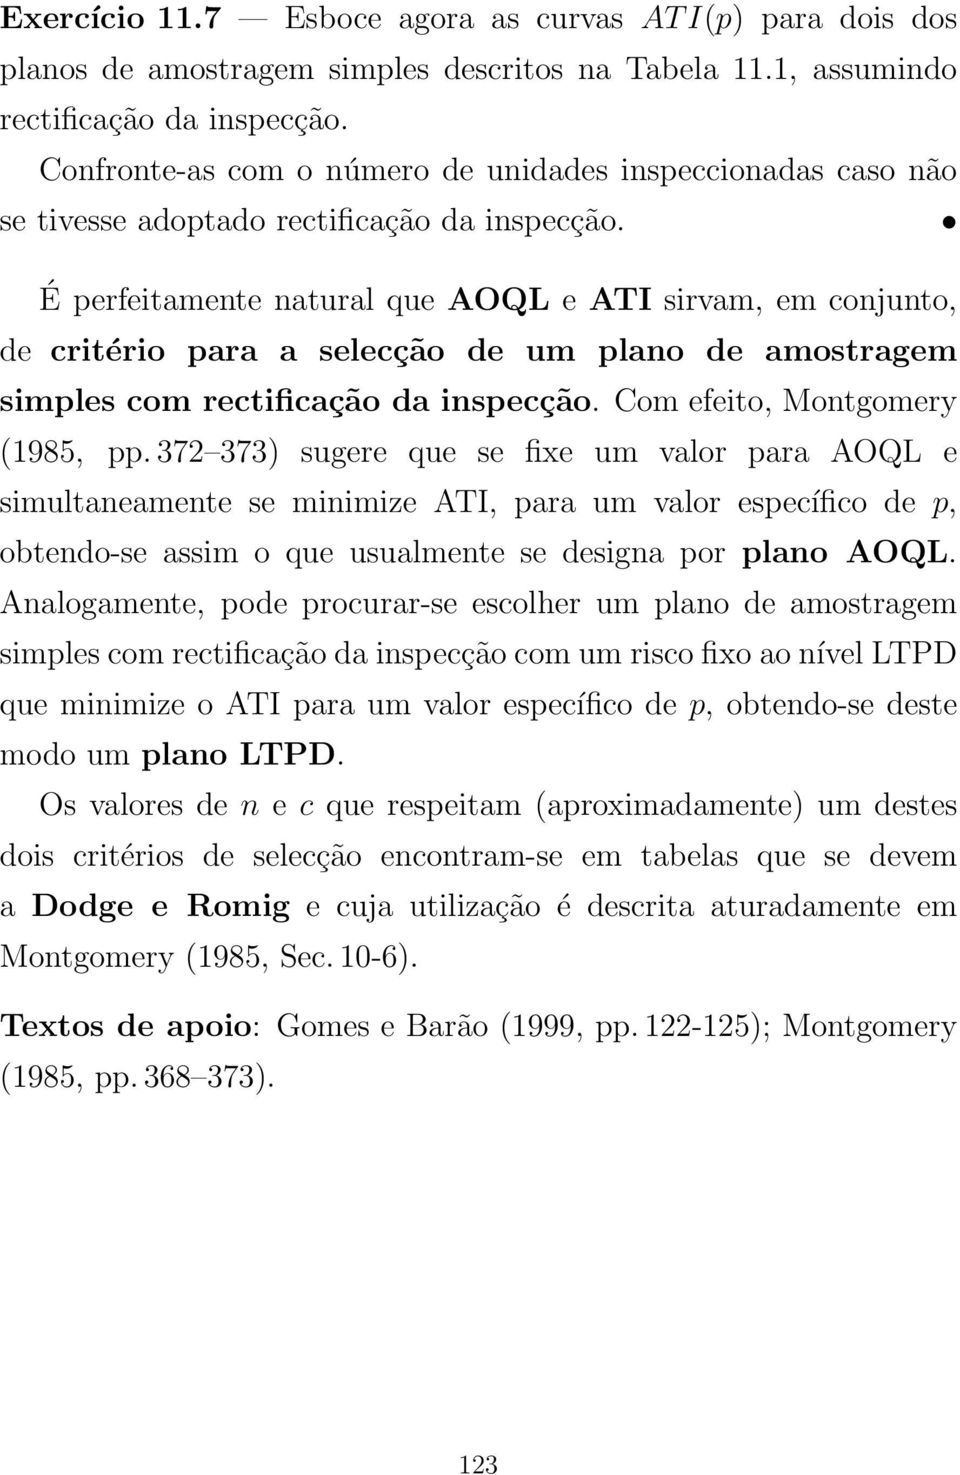 É perfeitamente natural que AOQL e ATI sirvam, em conjunto, de critério para a selecção de um plano de amostragem simples com rectificação da inspecção. Com efeito, Montgomery (1985, pp.